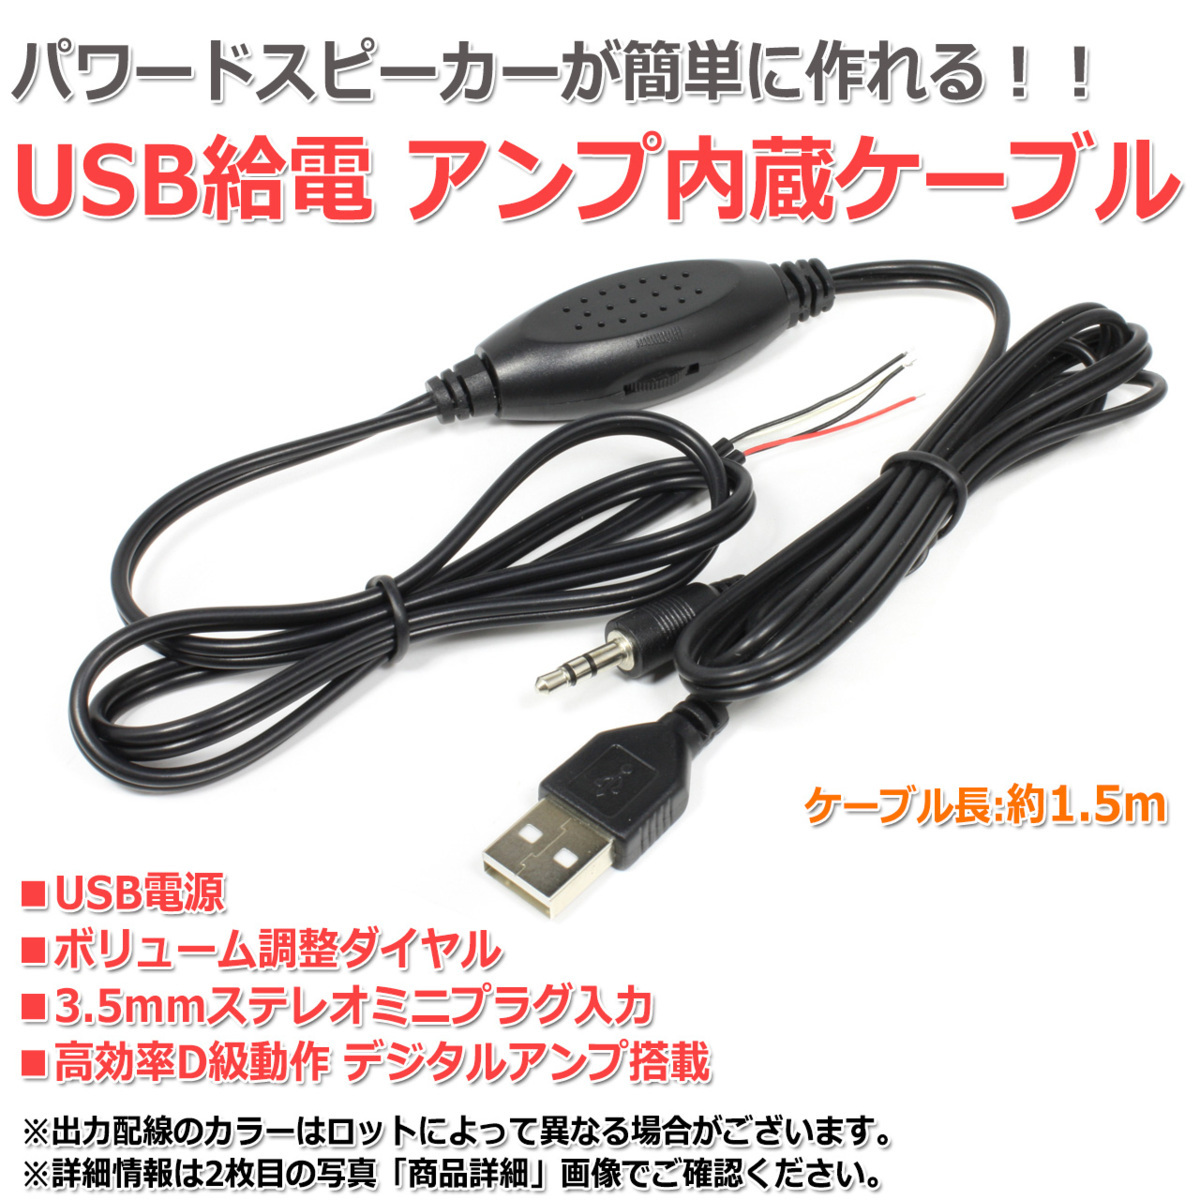 USB給電 デジタルアンプ内蔵オーディオケーブル[1.5m] 3.5mmステレオミニプラグ入力 ボリューム調整付き_画像1